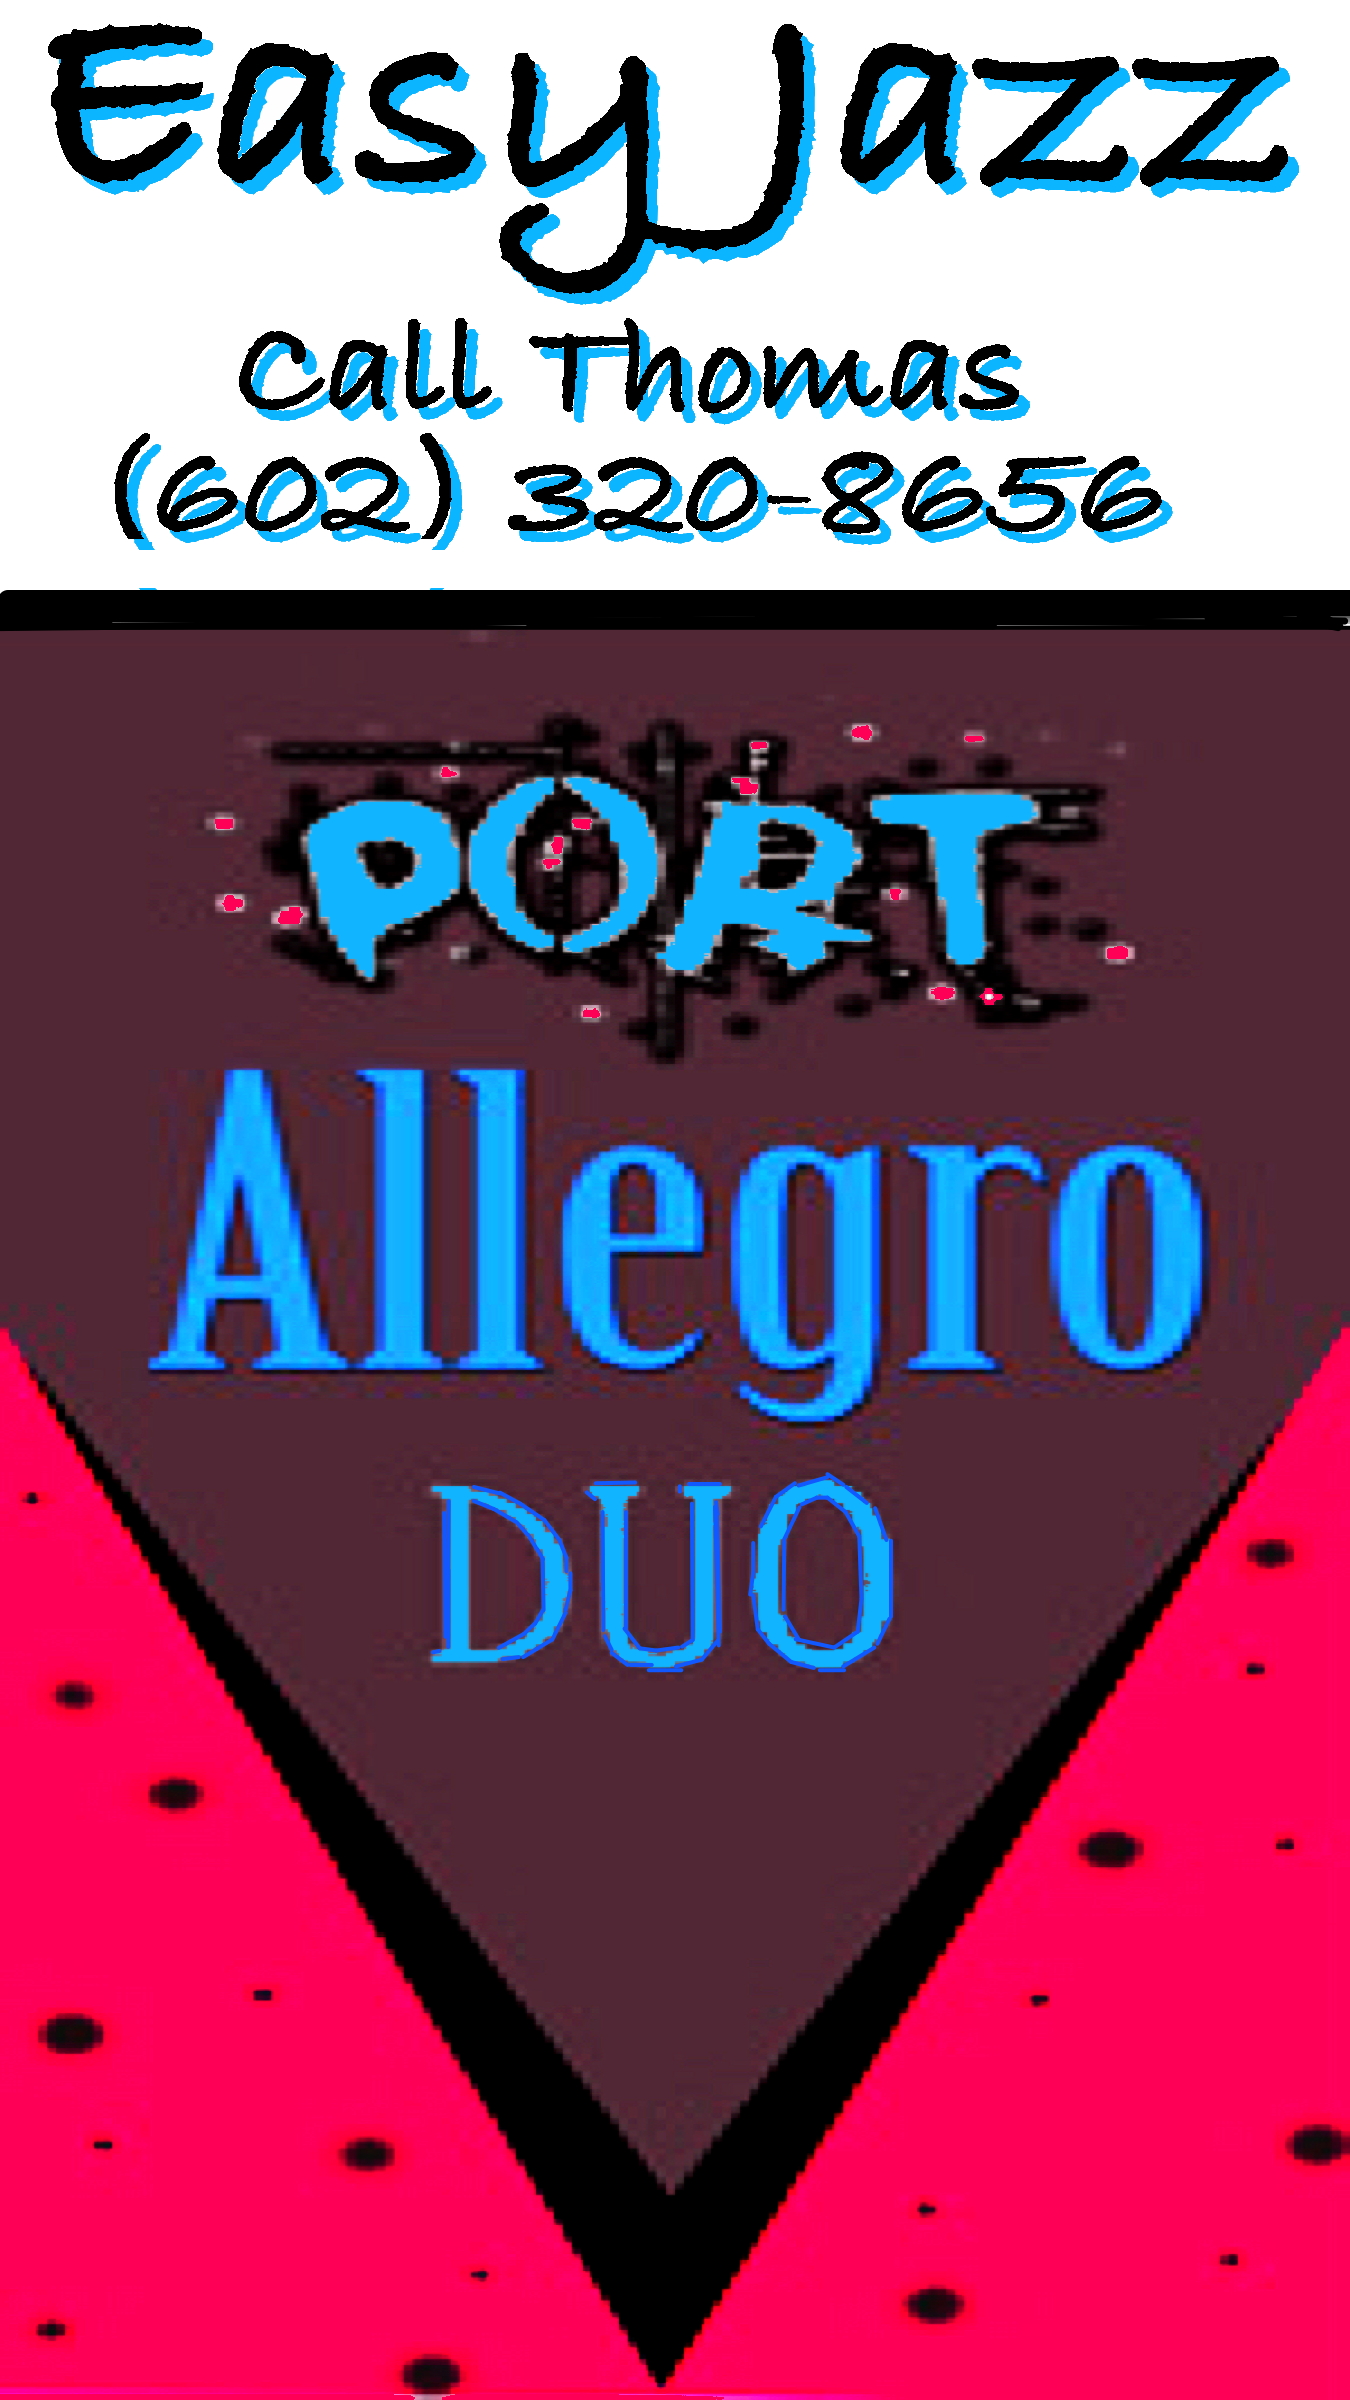 Port Allegro Duo card